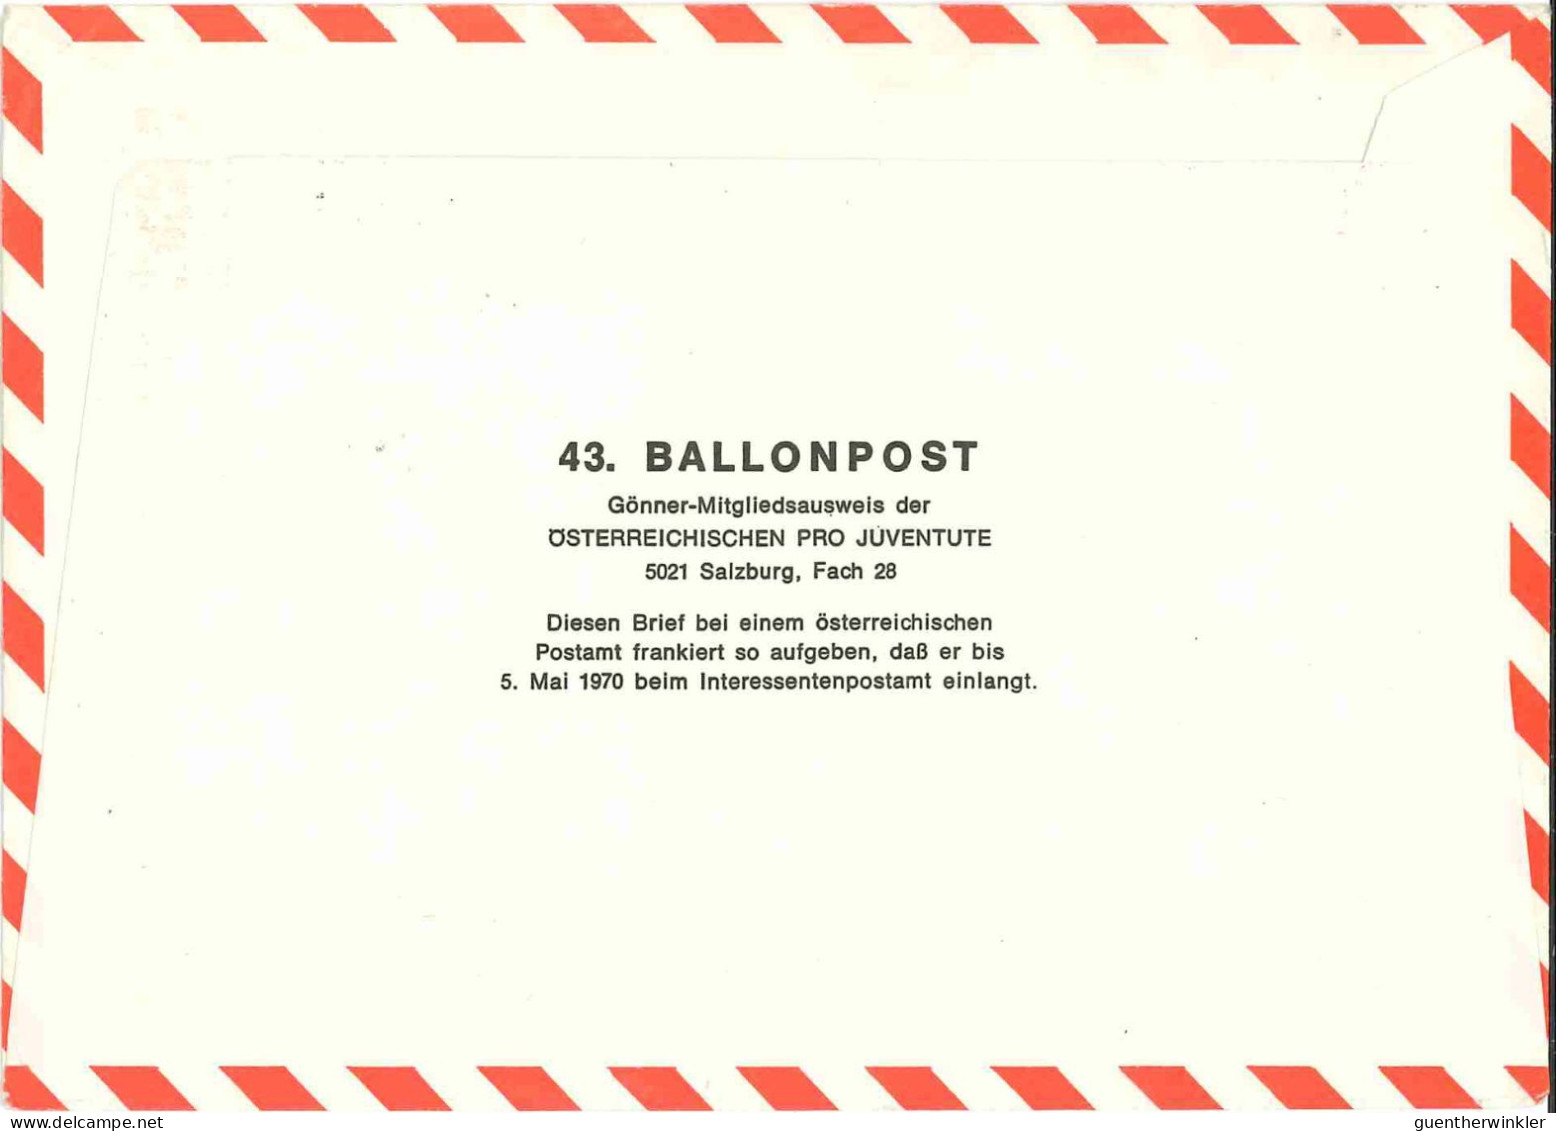 Regulärer Ballonpostflug Nr. 43a Der Pro Juventute [RBP43.] - Per Palloni